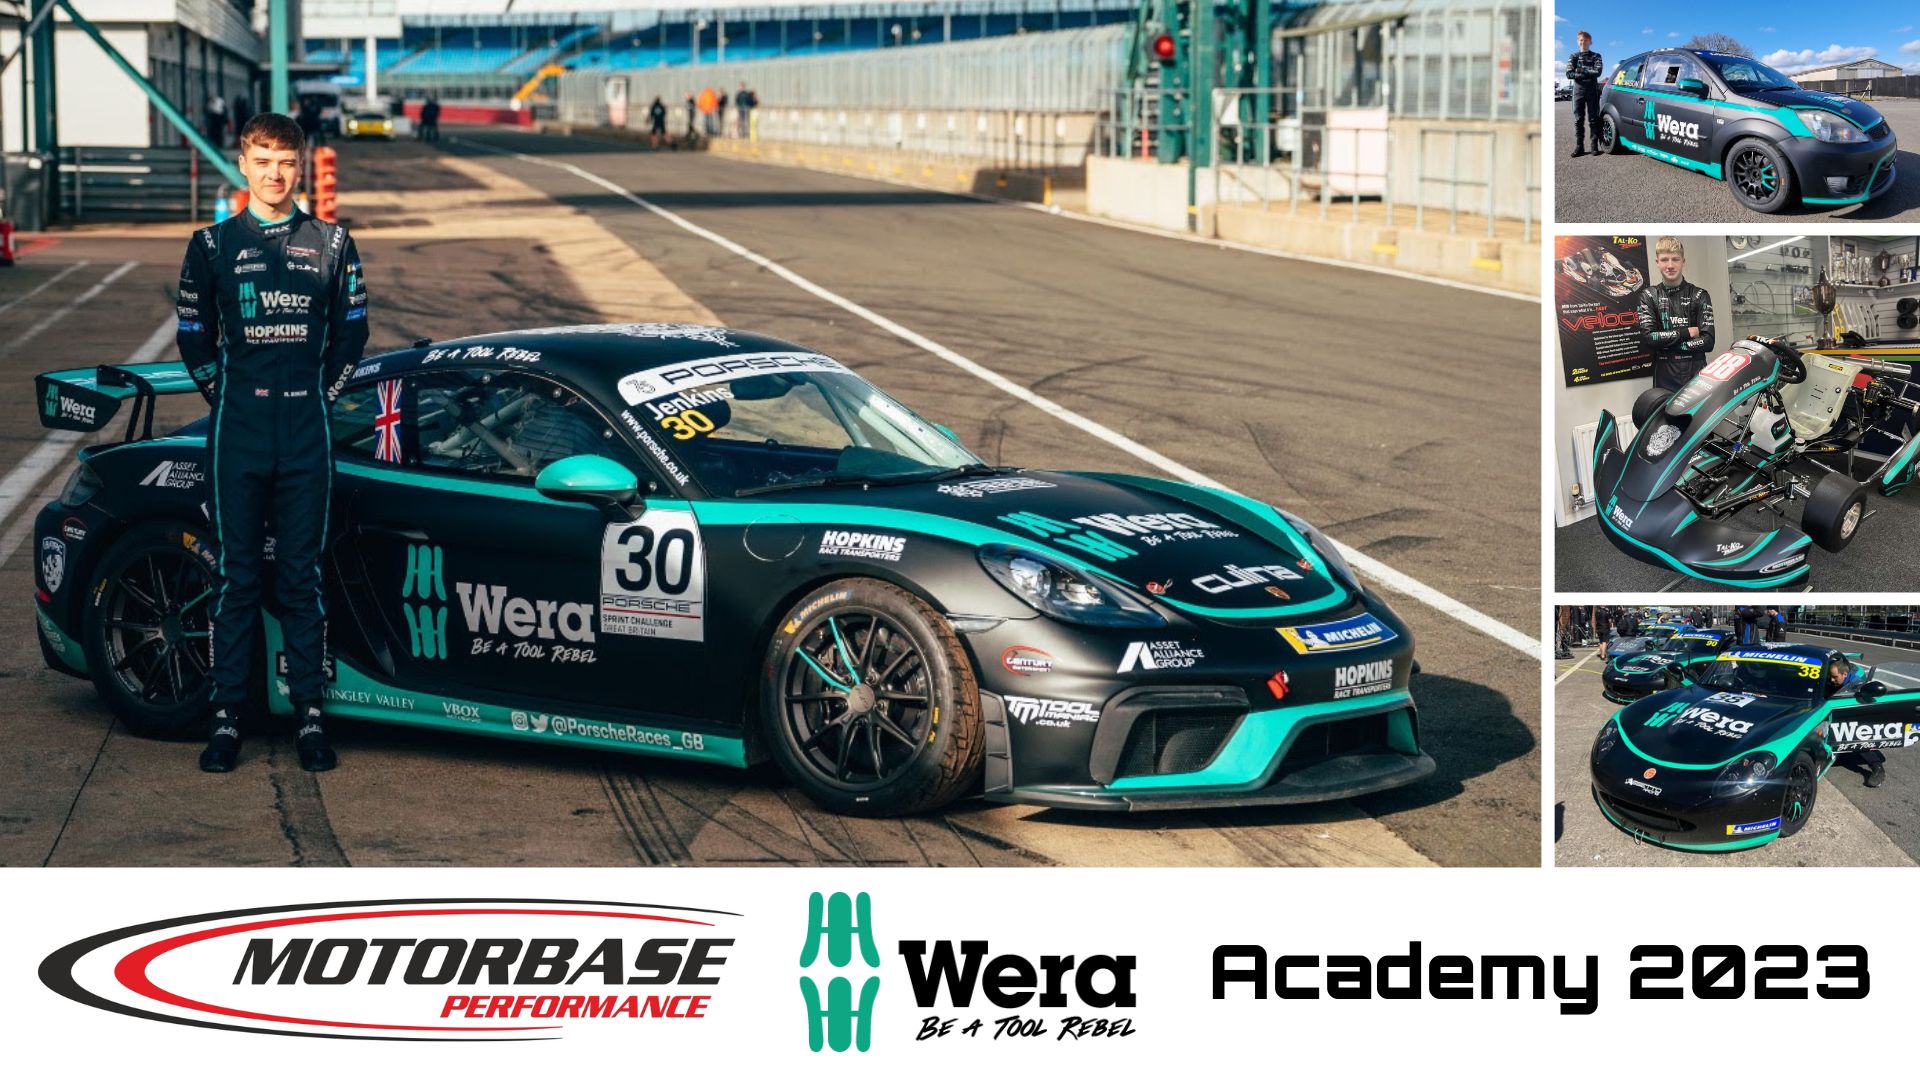 Motorbase wera tools academy